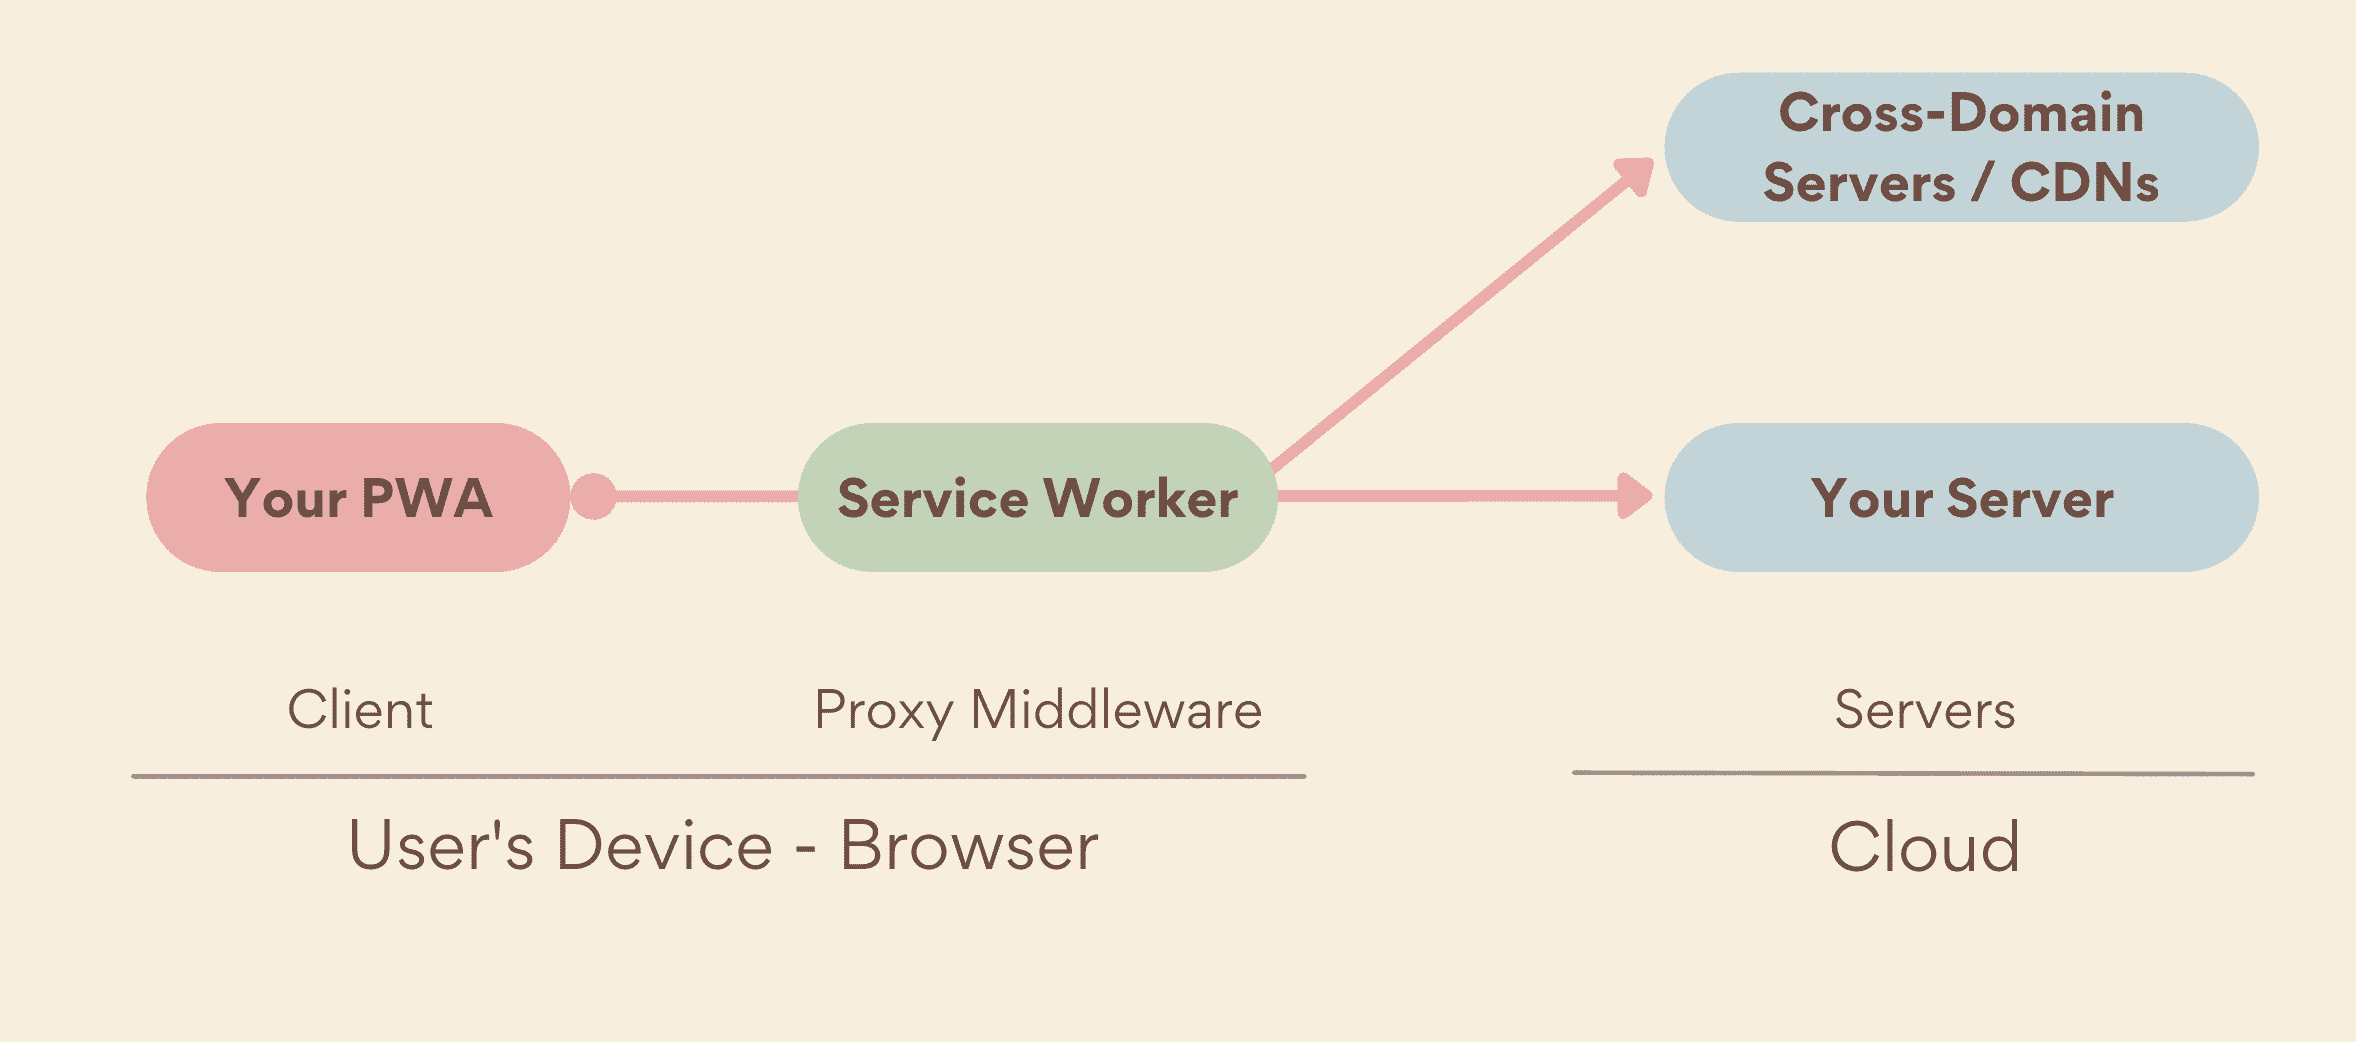 Skrypt service worker jako serwer proxy oprogramowania pośredniczącego działający po stronie urządzenia między Twoją aplikacją PWA a serwerami. Obejmuje zarówno Twoje serwery, jak i serwery w wielu domenach.